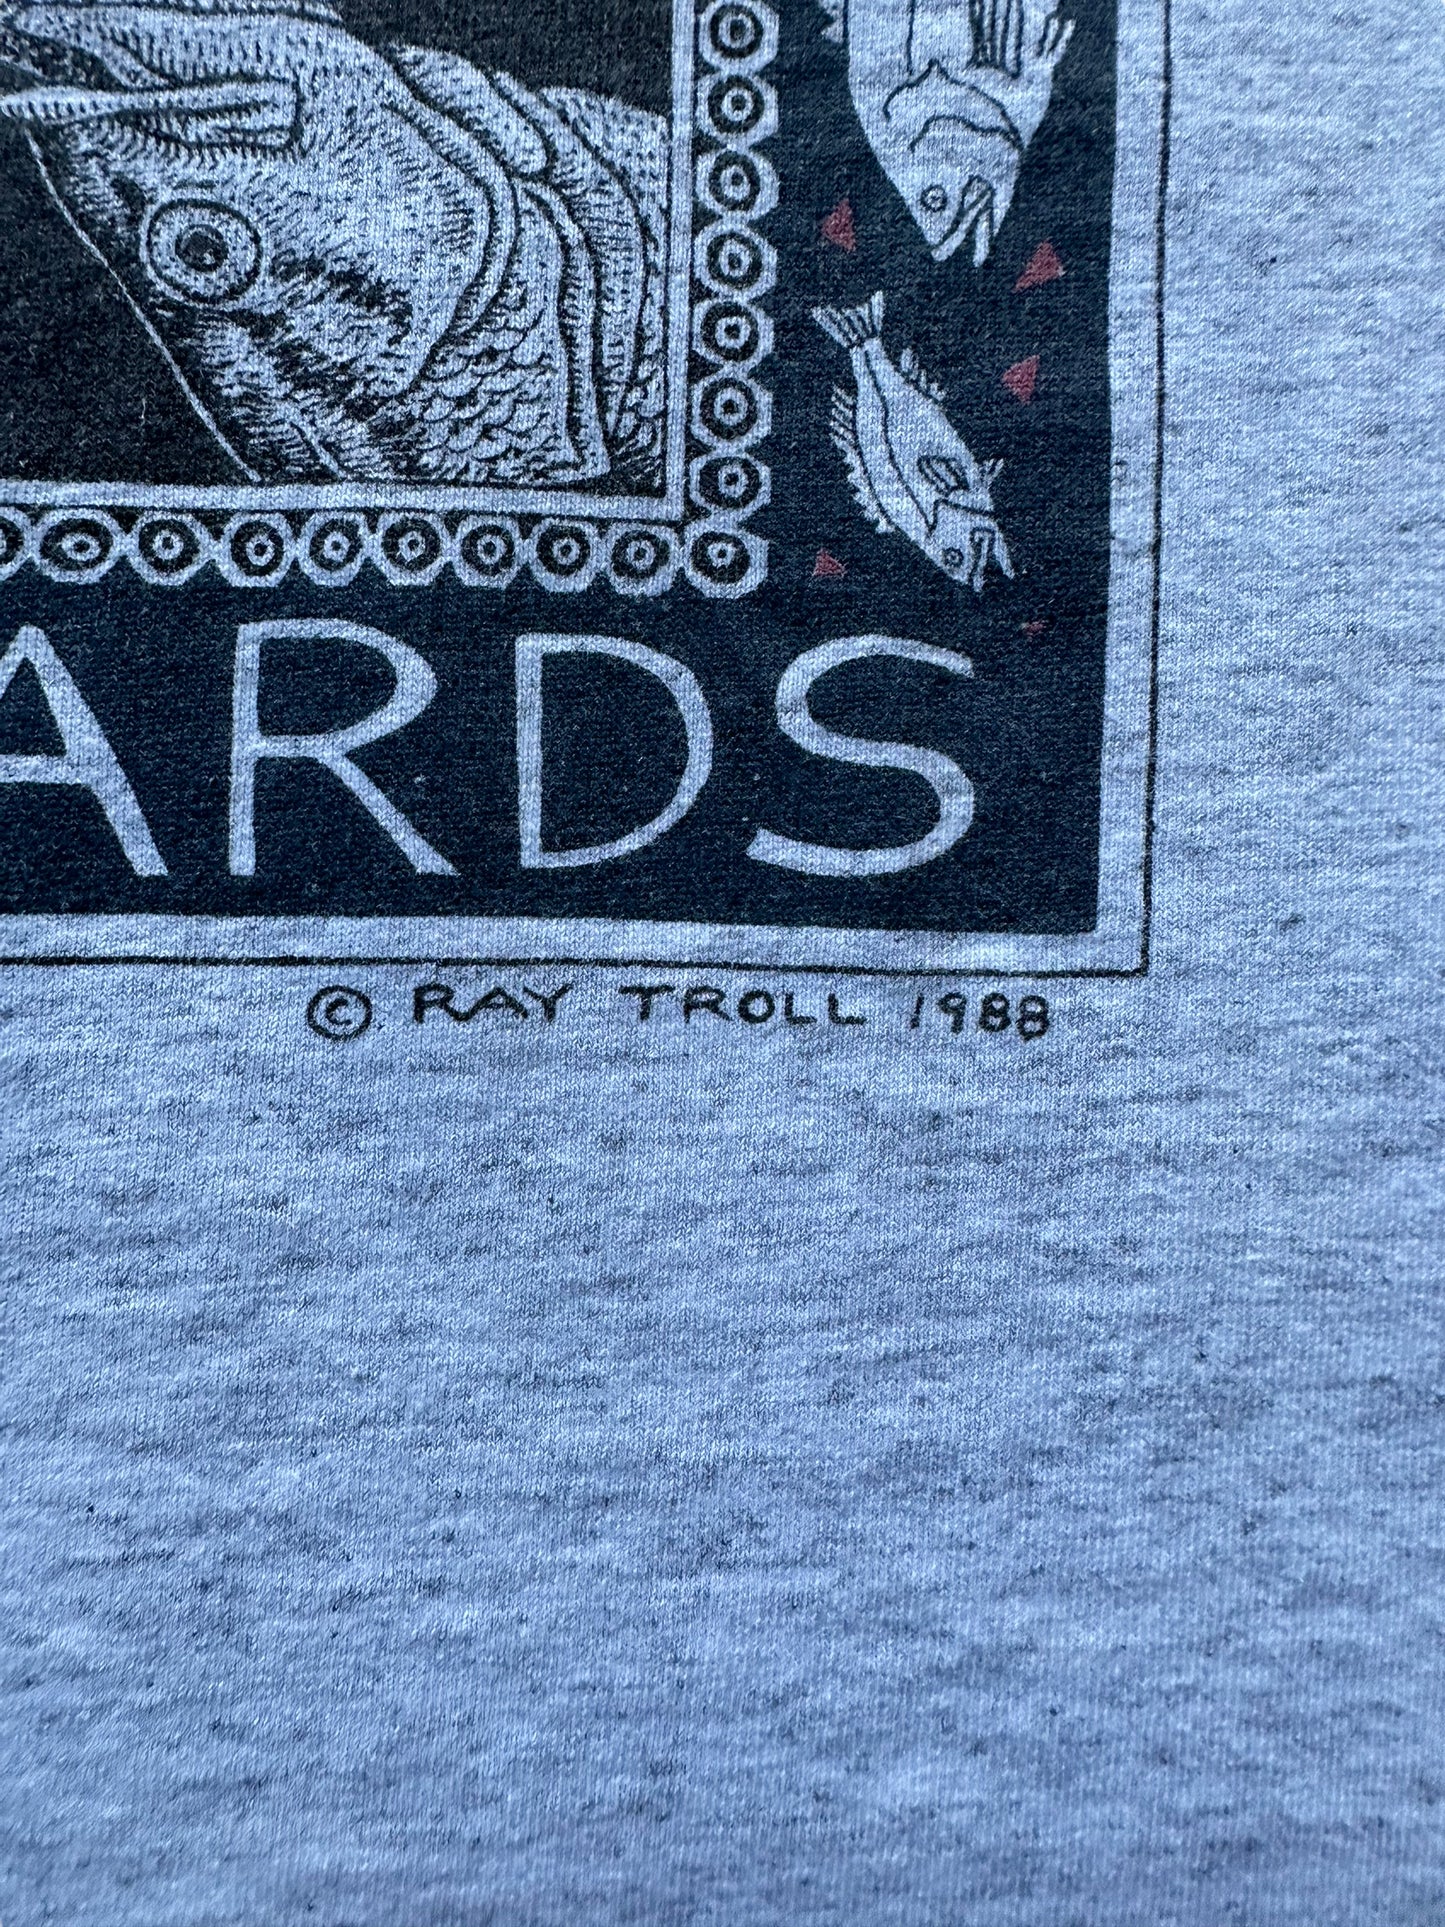 Signature on Vintage Ray Troll Bass Ackwards Tee SZ M |  Vintage Fishing Tee Seattle | Barn Owl Vintage